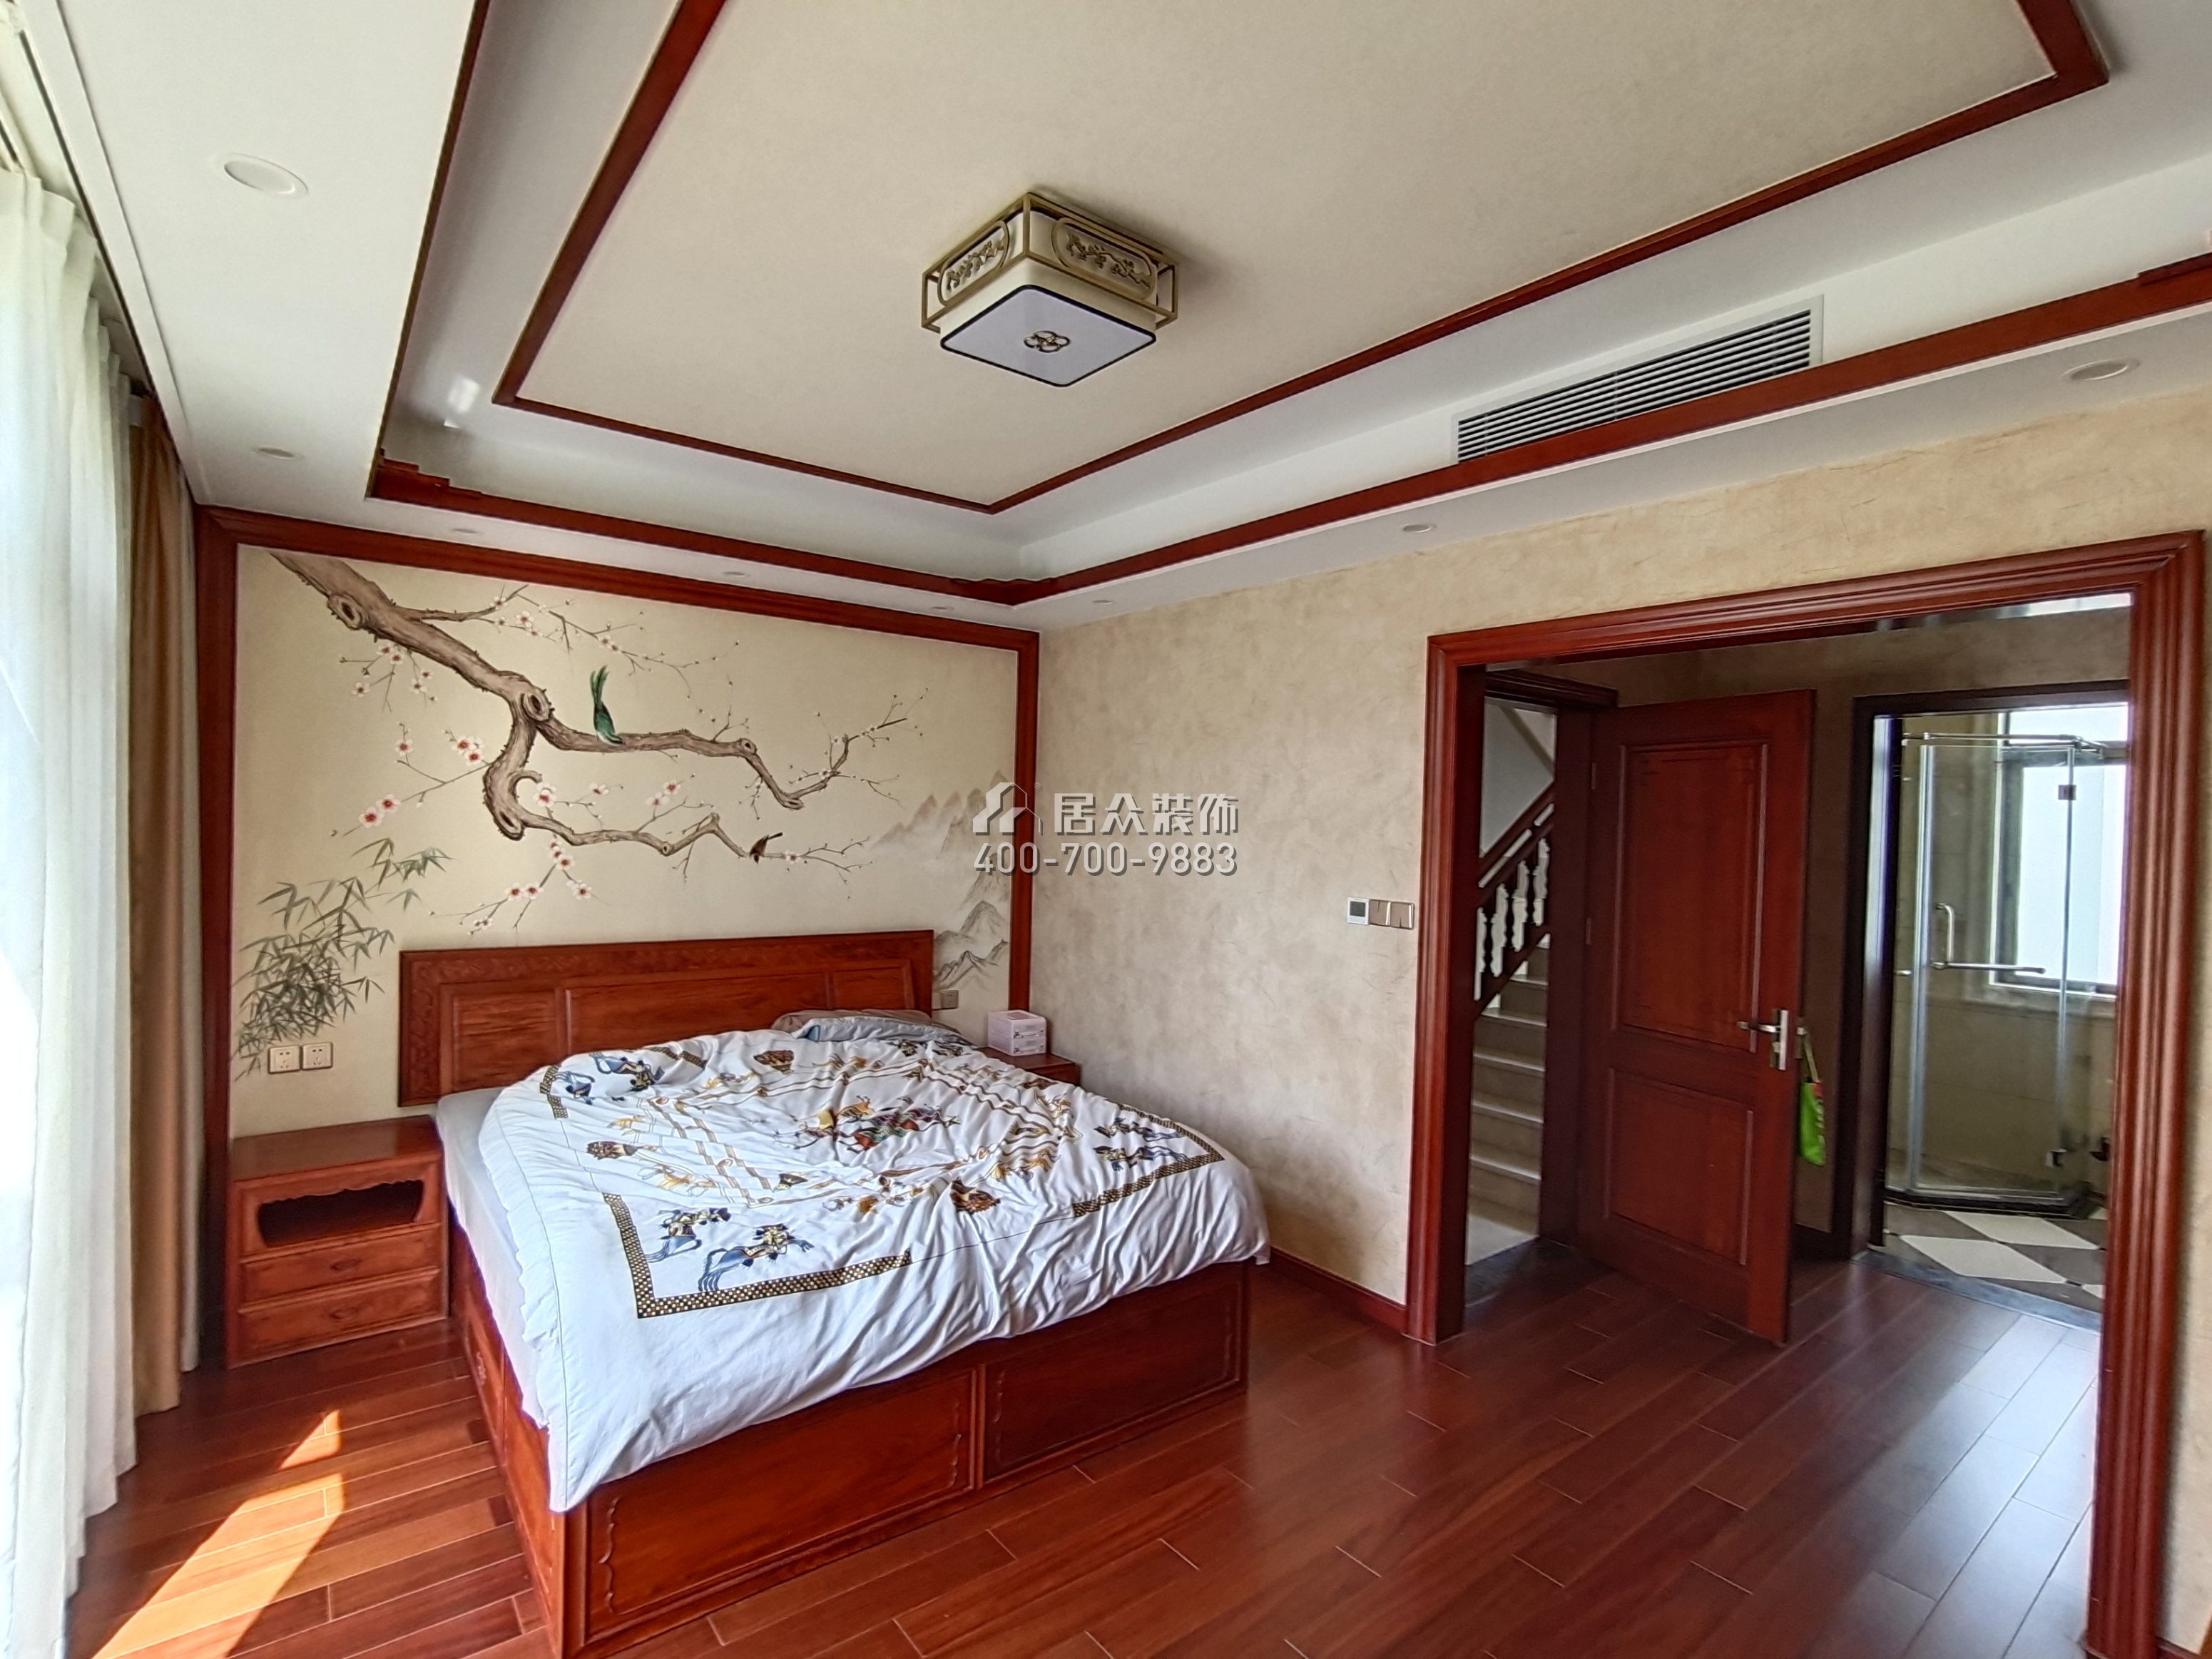 大朗碧桂園350平方米中式風格別墅戶型臥室裝修效果圖